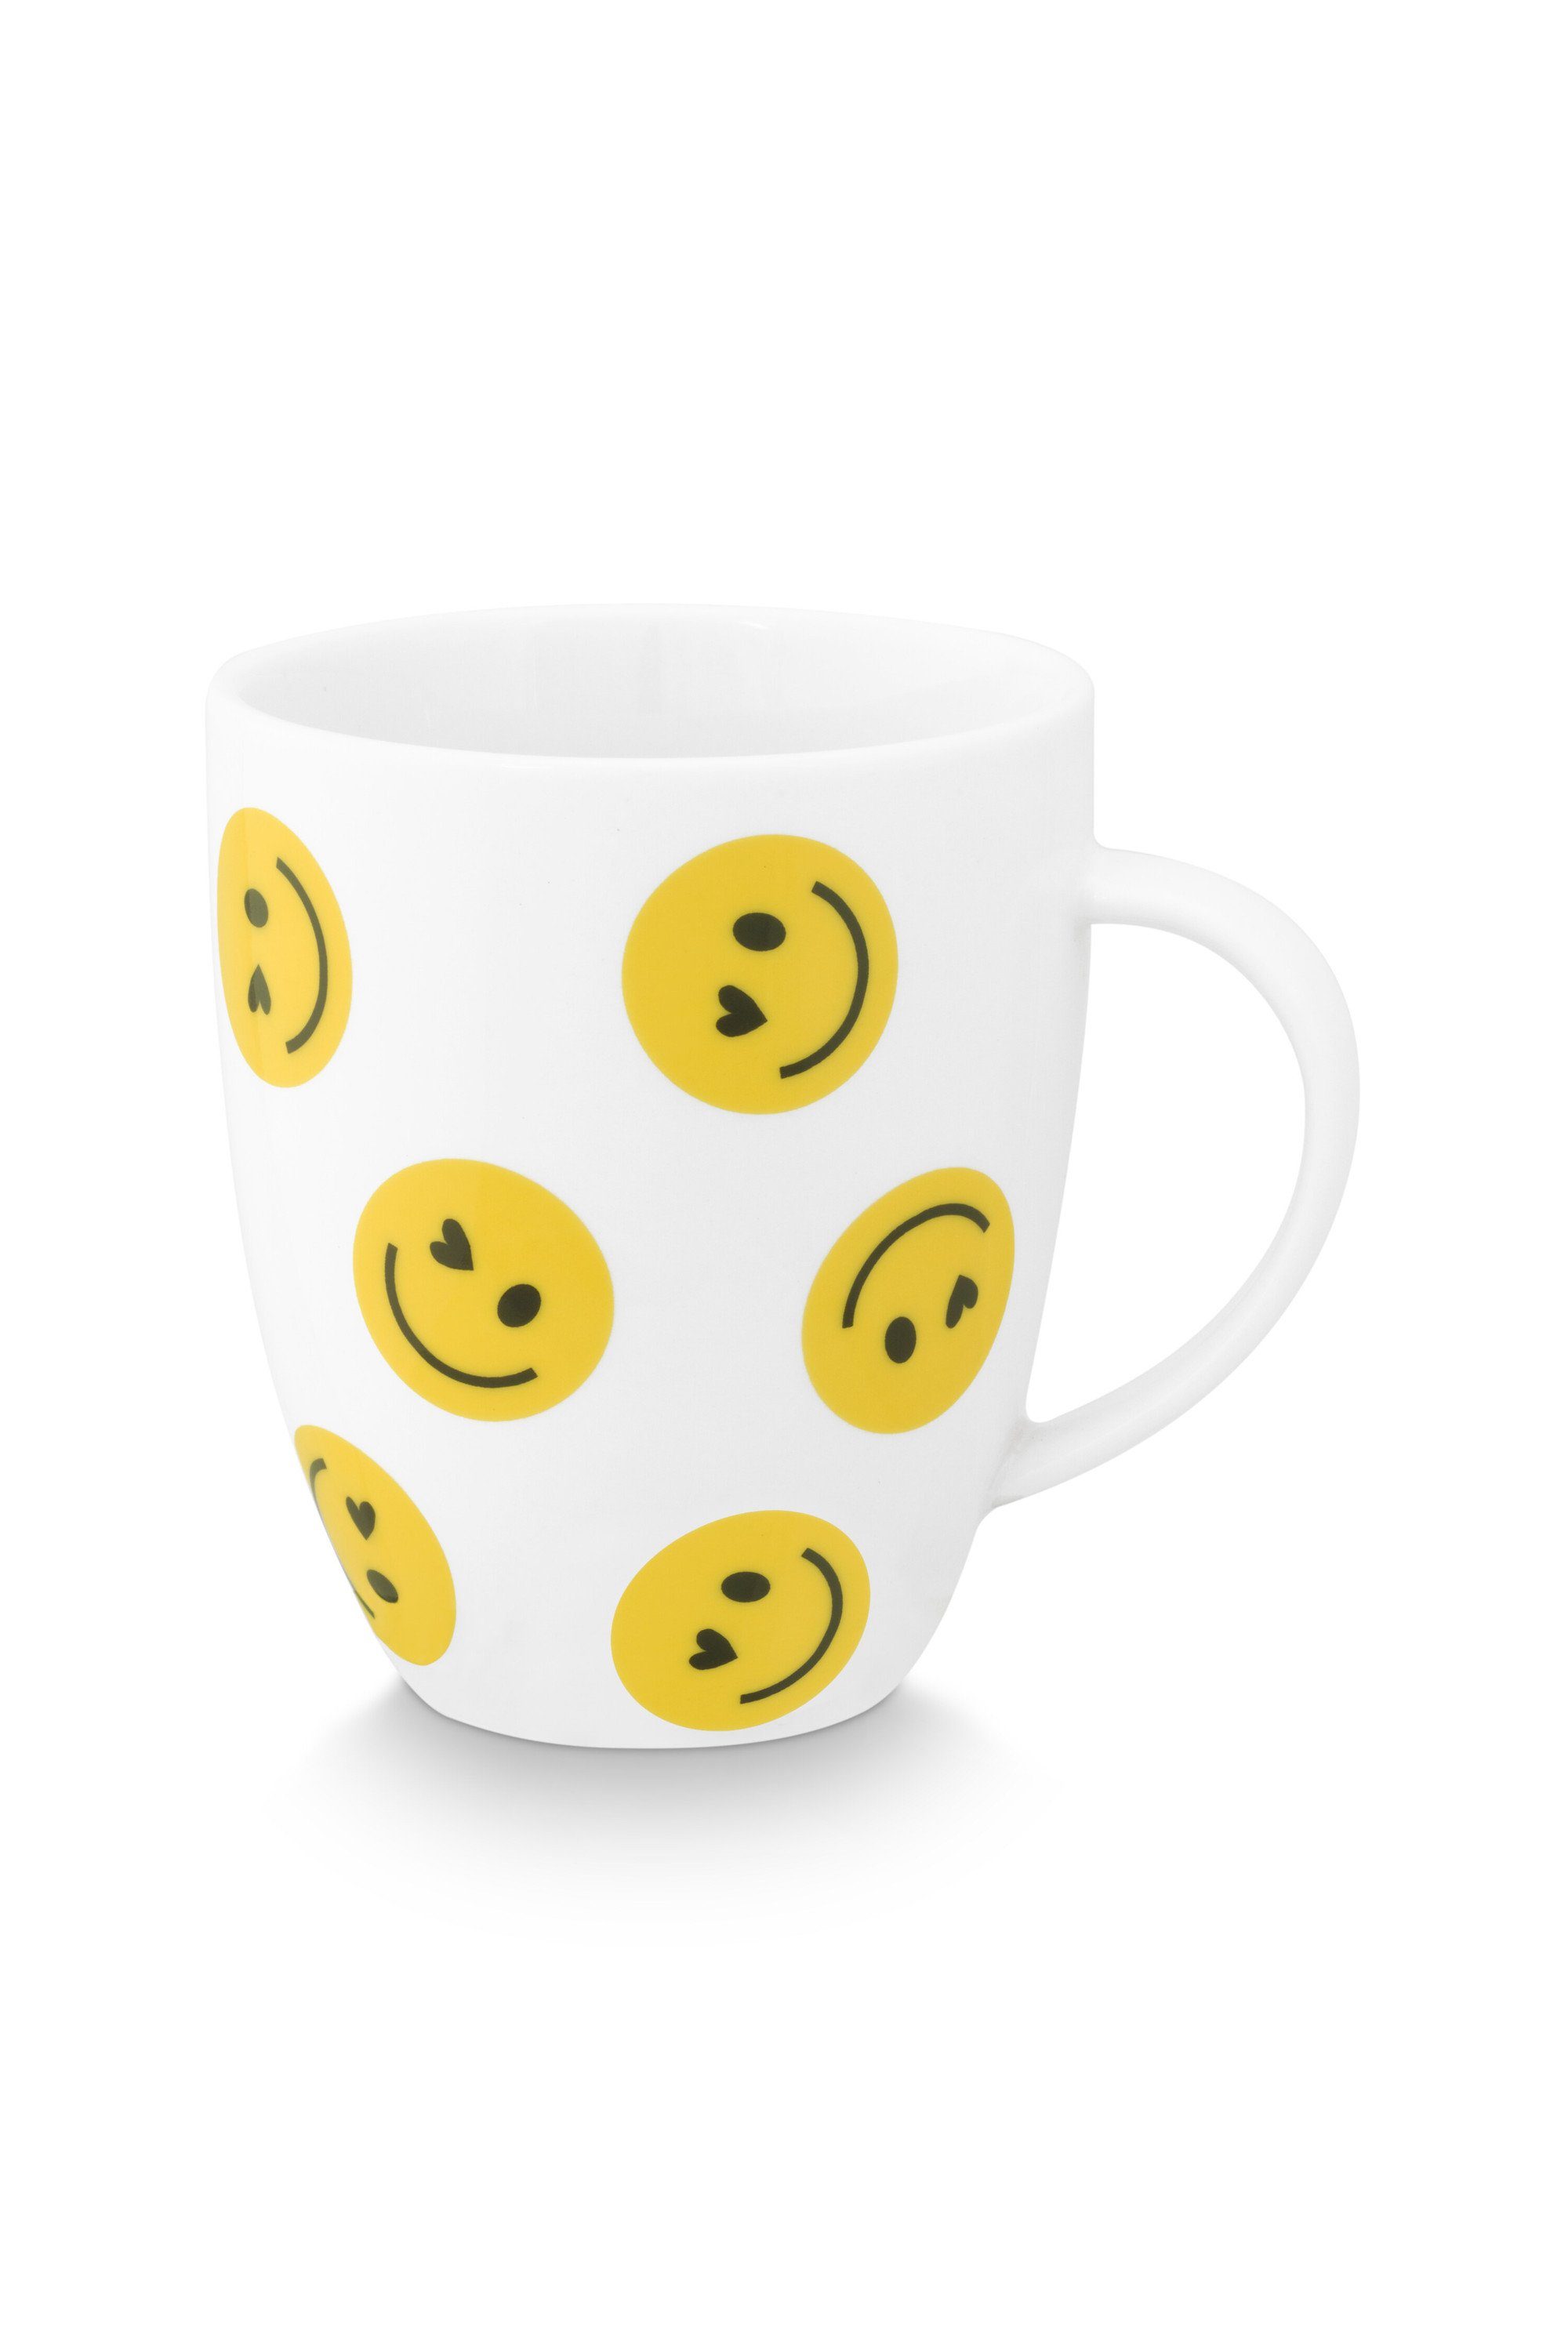 vtwonen Tasse VT Wonen Tassen Set aus der Serie SMILE, 2 Stück a 250 ml., gelb, Keramik